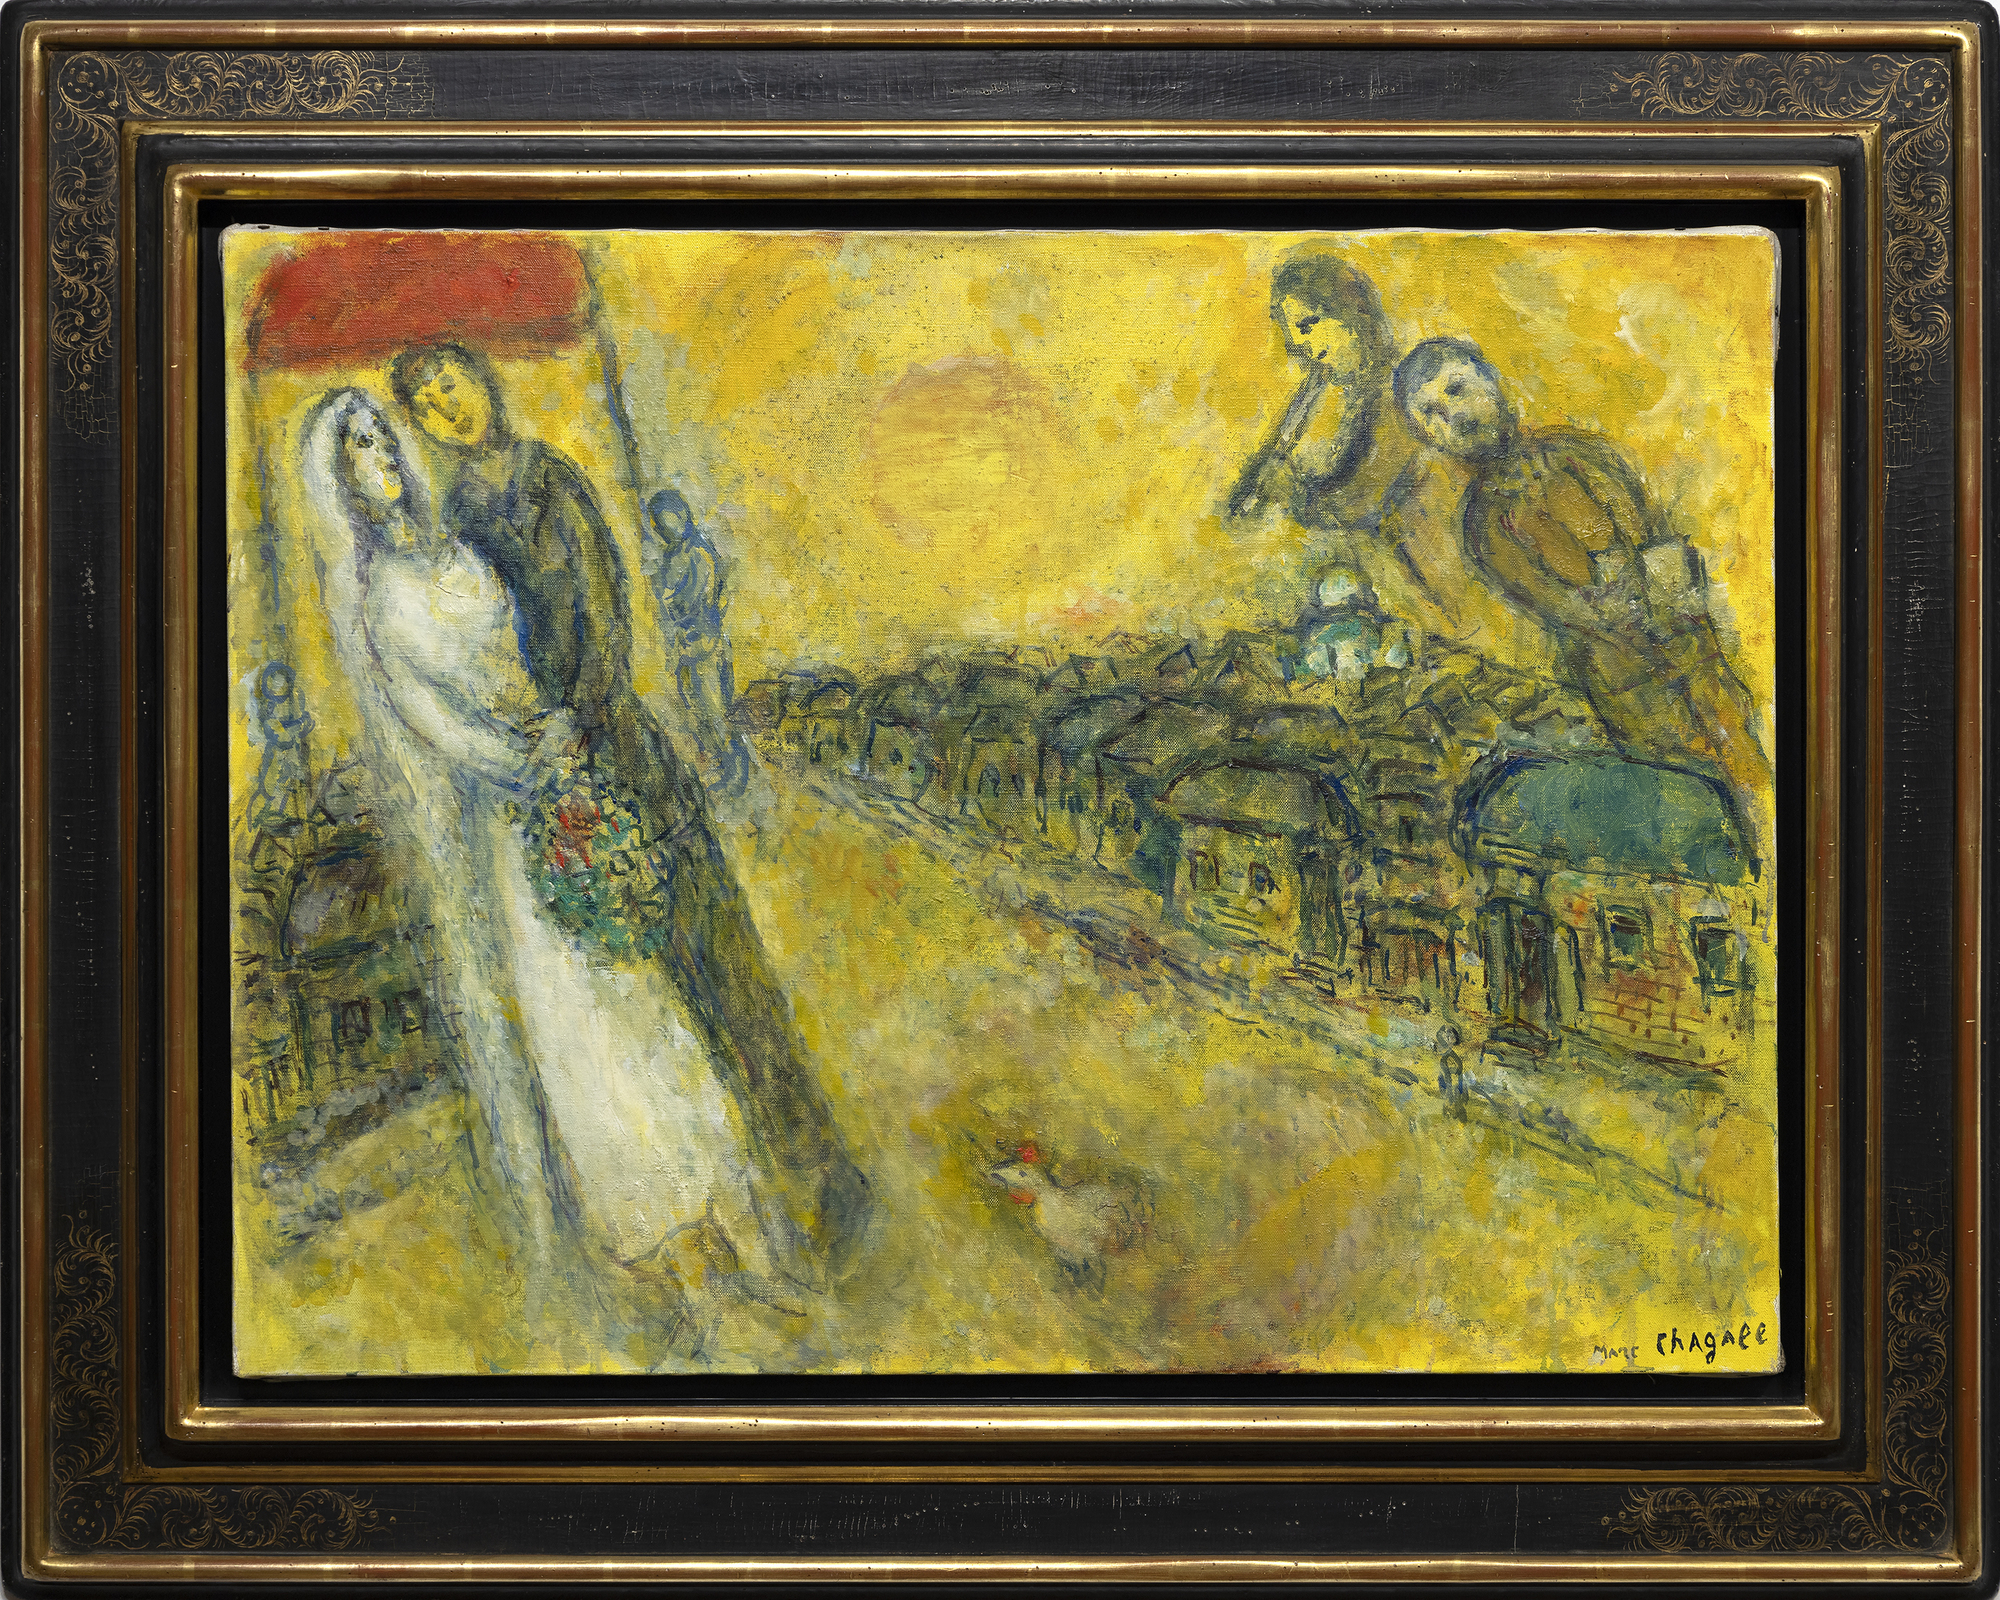 Le monde de Marc Chagall ne peut être contenu ou limité par les étiquettes que nous lui attachons. C'est un monde d'images et de significations qui forment leur propre discours splendidement mystique. Les Mariés sous le baldaquin a été entrepris alors que l'artiste entrait dans sa 90e année, un homme qui avait connu la tragédie et le conflit, mais qui n'avait jamais oublié les moments de plaisir de la vie. Ici, les délices rêveurs d'un mariage dans un village russe, avec ses arrangements de participants bien rodés, nous sont présentés avec un esprit si joyeux et une innocence si gaie qu'il est impossible de résister à son charme. En utilisant une émulsion dorée combinant l'huile et la gouache opaque à base d'eau, la chaleur, le bonheur et l'optimisme du positivisme habituel de Chagall sont enveloppés d'un éclat lumineux suggérant l'influence des icônes religieuses à feuilles d'or ou de la peinture du début de la Renaissance qui cherchait à donner l'impression d'une lumière divine ou d'une illumination spirituelle. L'utilisation d'une combinaison d'huile et de gouache peut s'avérer difficile. Mais ici, dans Les Mariés sous le baldaquin, Chagall l'utilise pour donner à la scène une qualité d'un autre monde, presque comme si elle venait de se matérialiser à partir de l'œil de son esprit. La finesse de sa texture donne l'impression que la lumière émane de l'œuvre elle-même et confère une qualité spectrale aux personnages qui flottent dans le ciel.